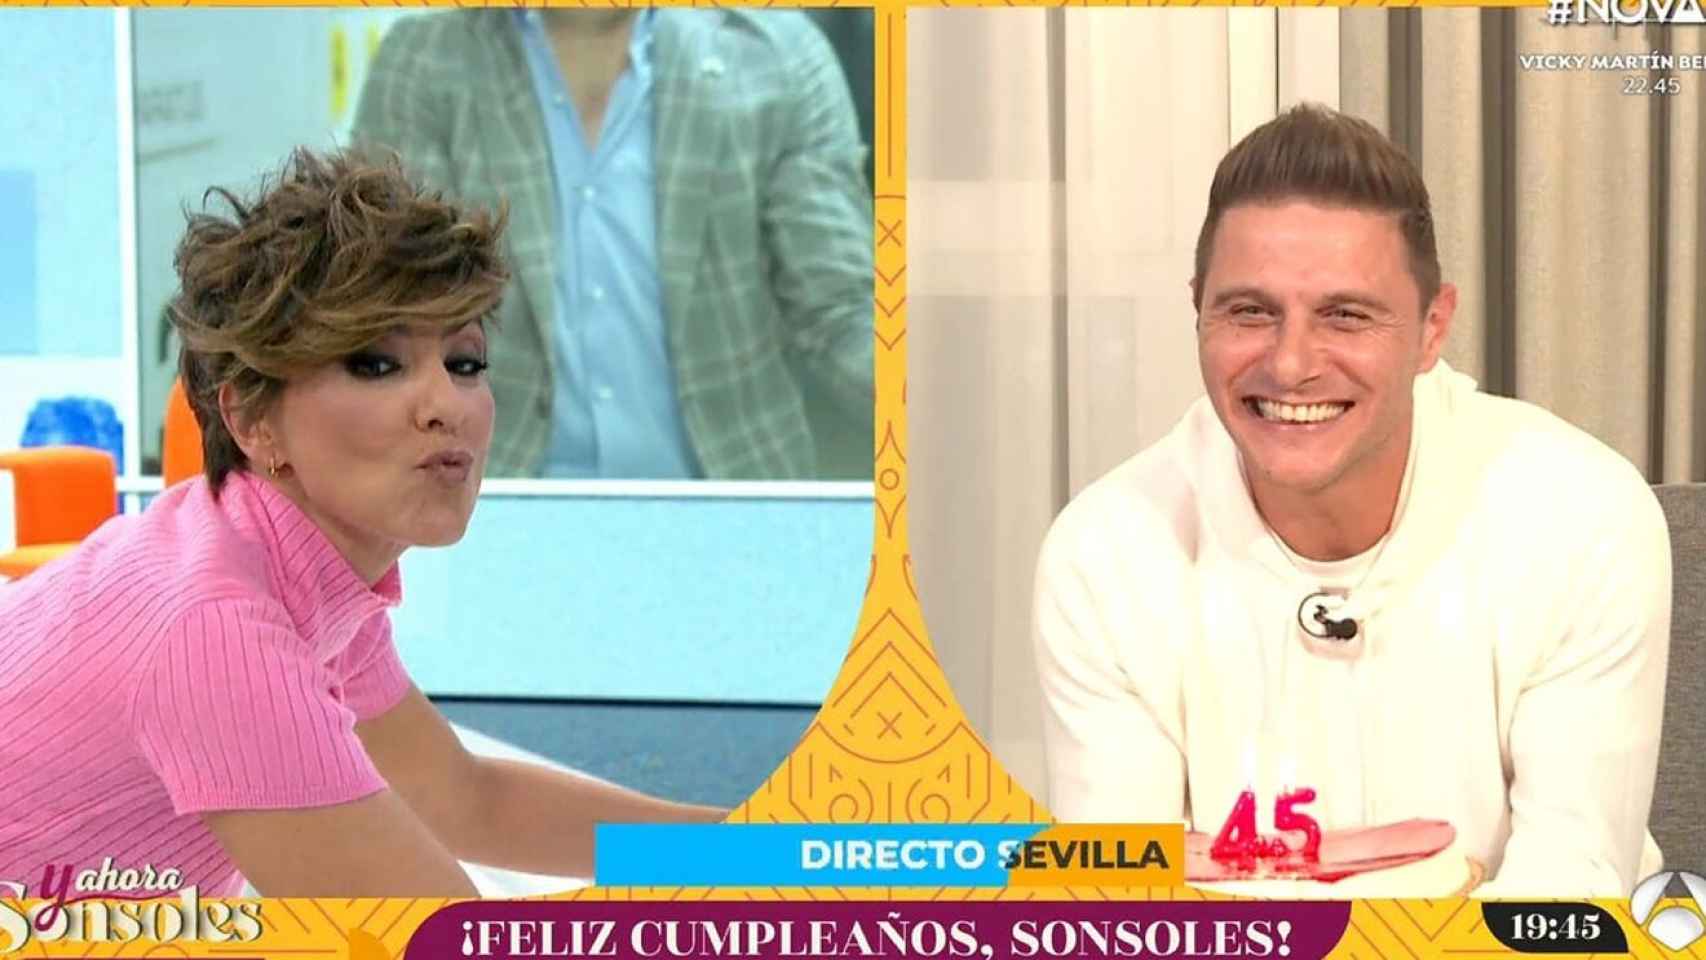 Sonsoles Ónega entrevistando a Joaquín Sánchez en 'Y ahora Sonsoles'.